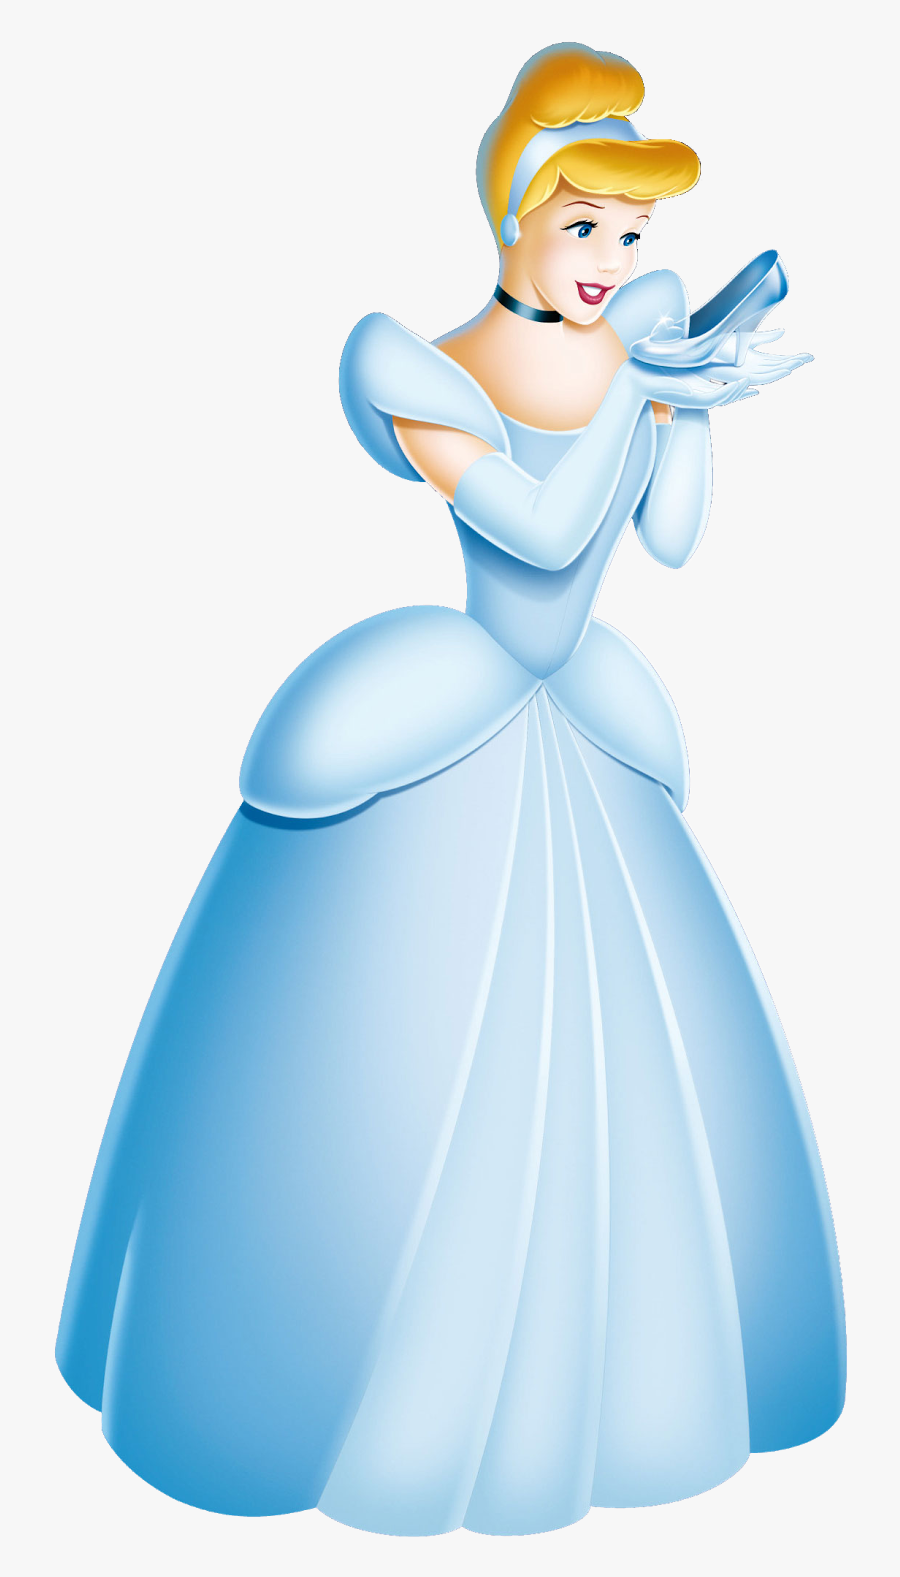 Cinderella Clipart Disney - Clip Art Cinderella Glass Slipper, Transparent Clipart